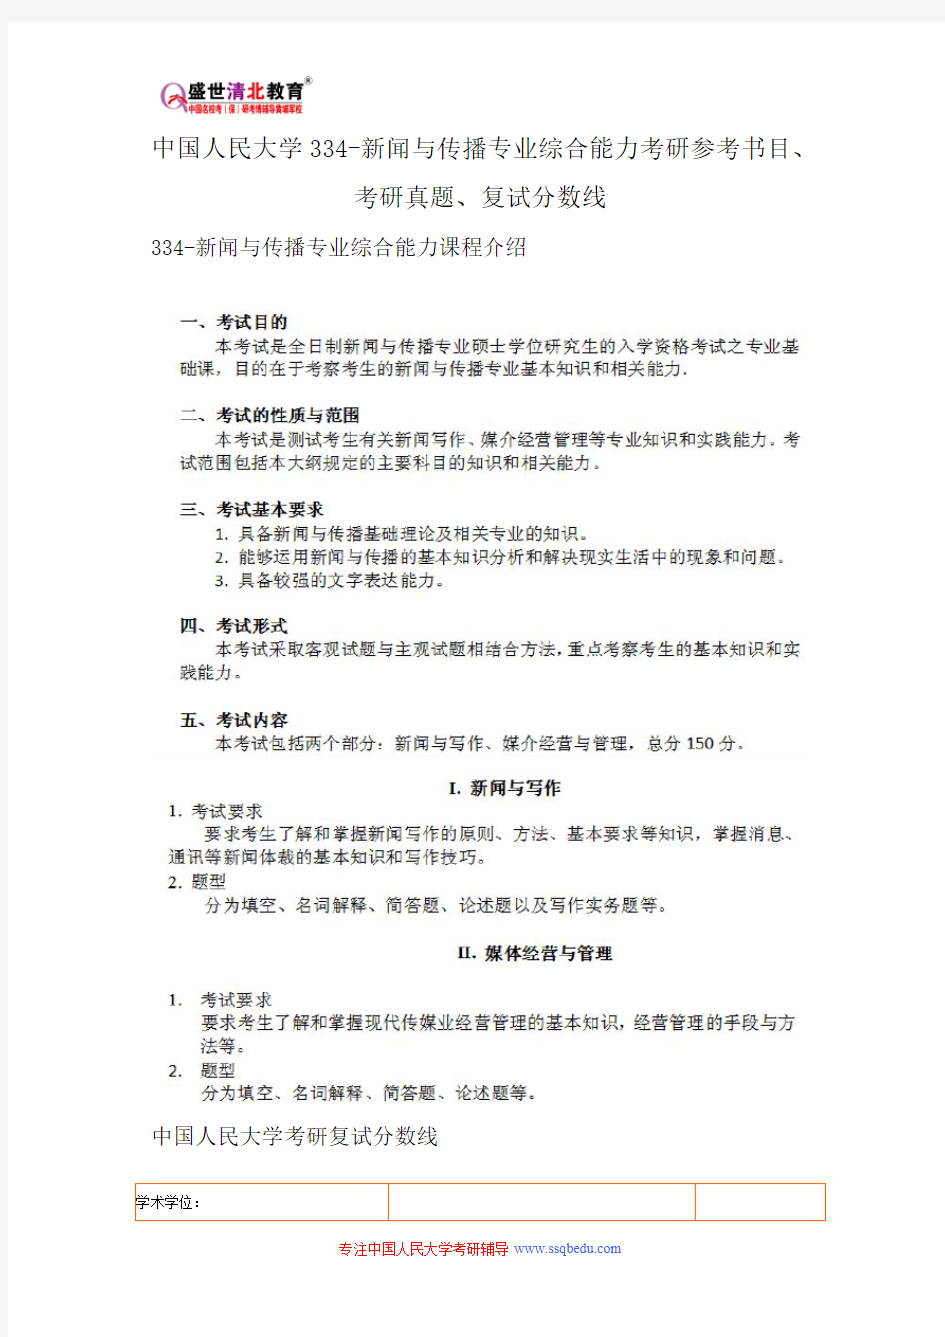 中国人民大学334-新闻与传播专业综合能力考研参考书目、考研真题、复试分数线